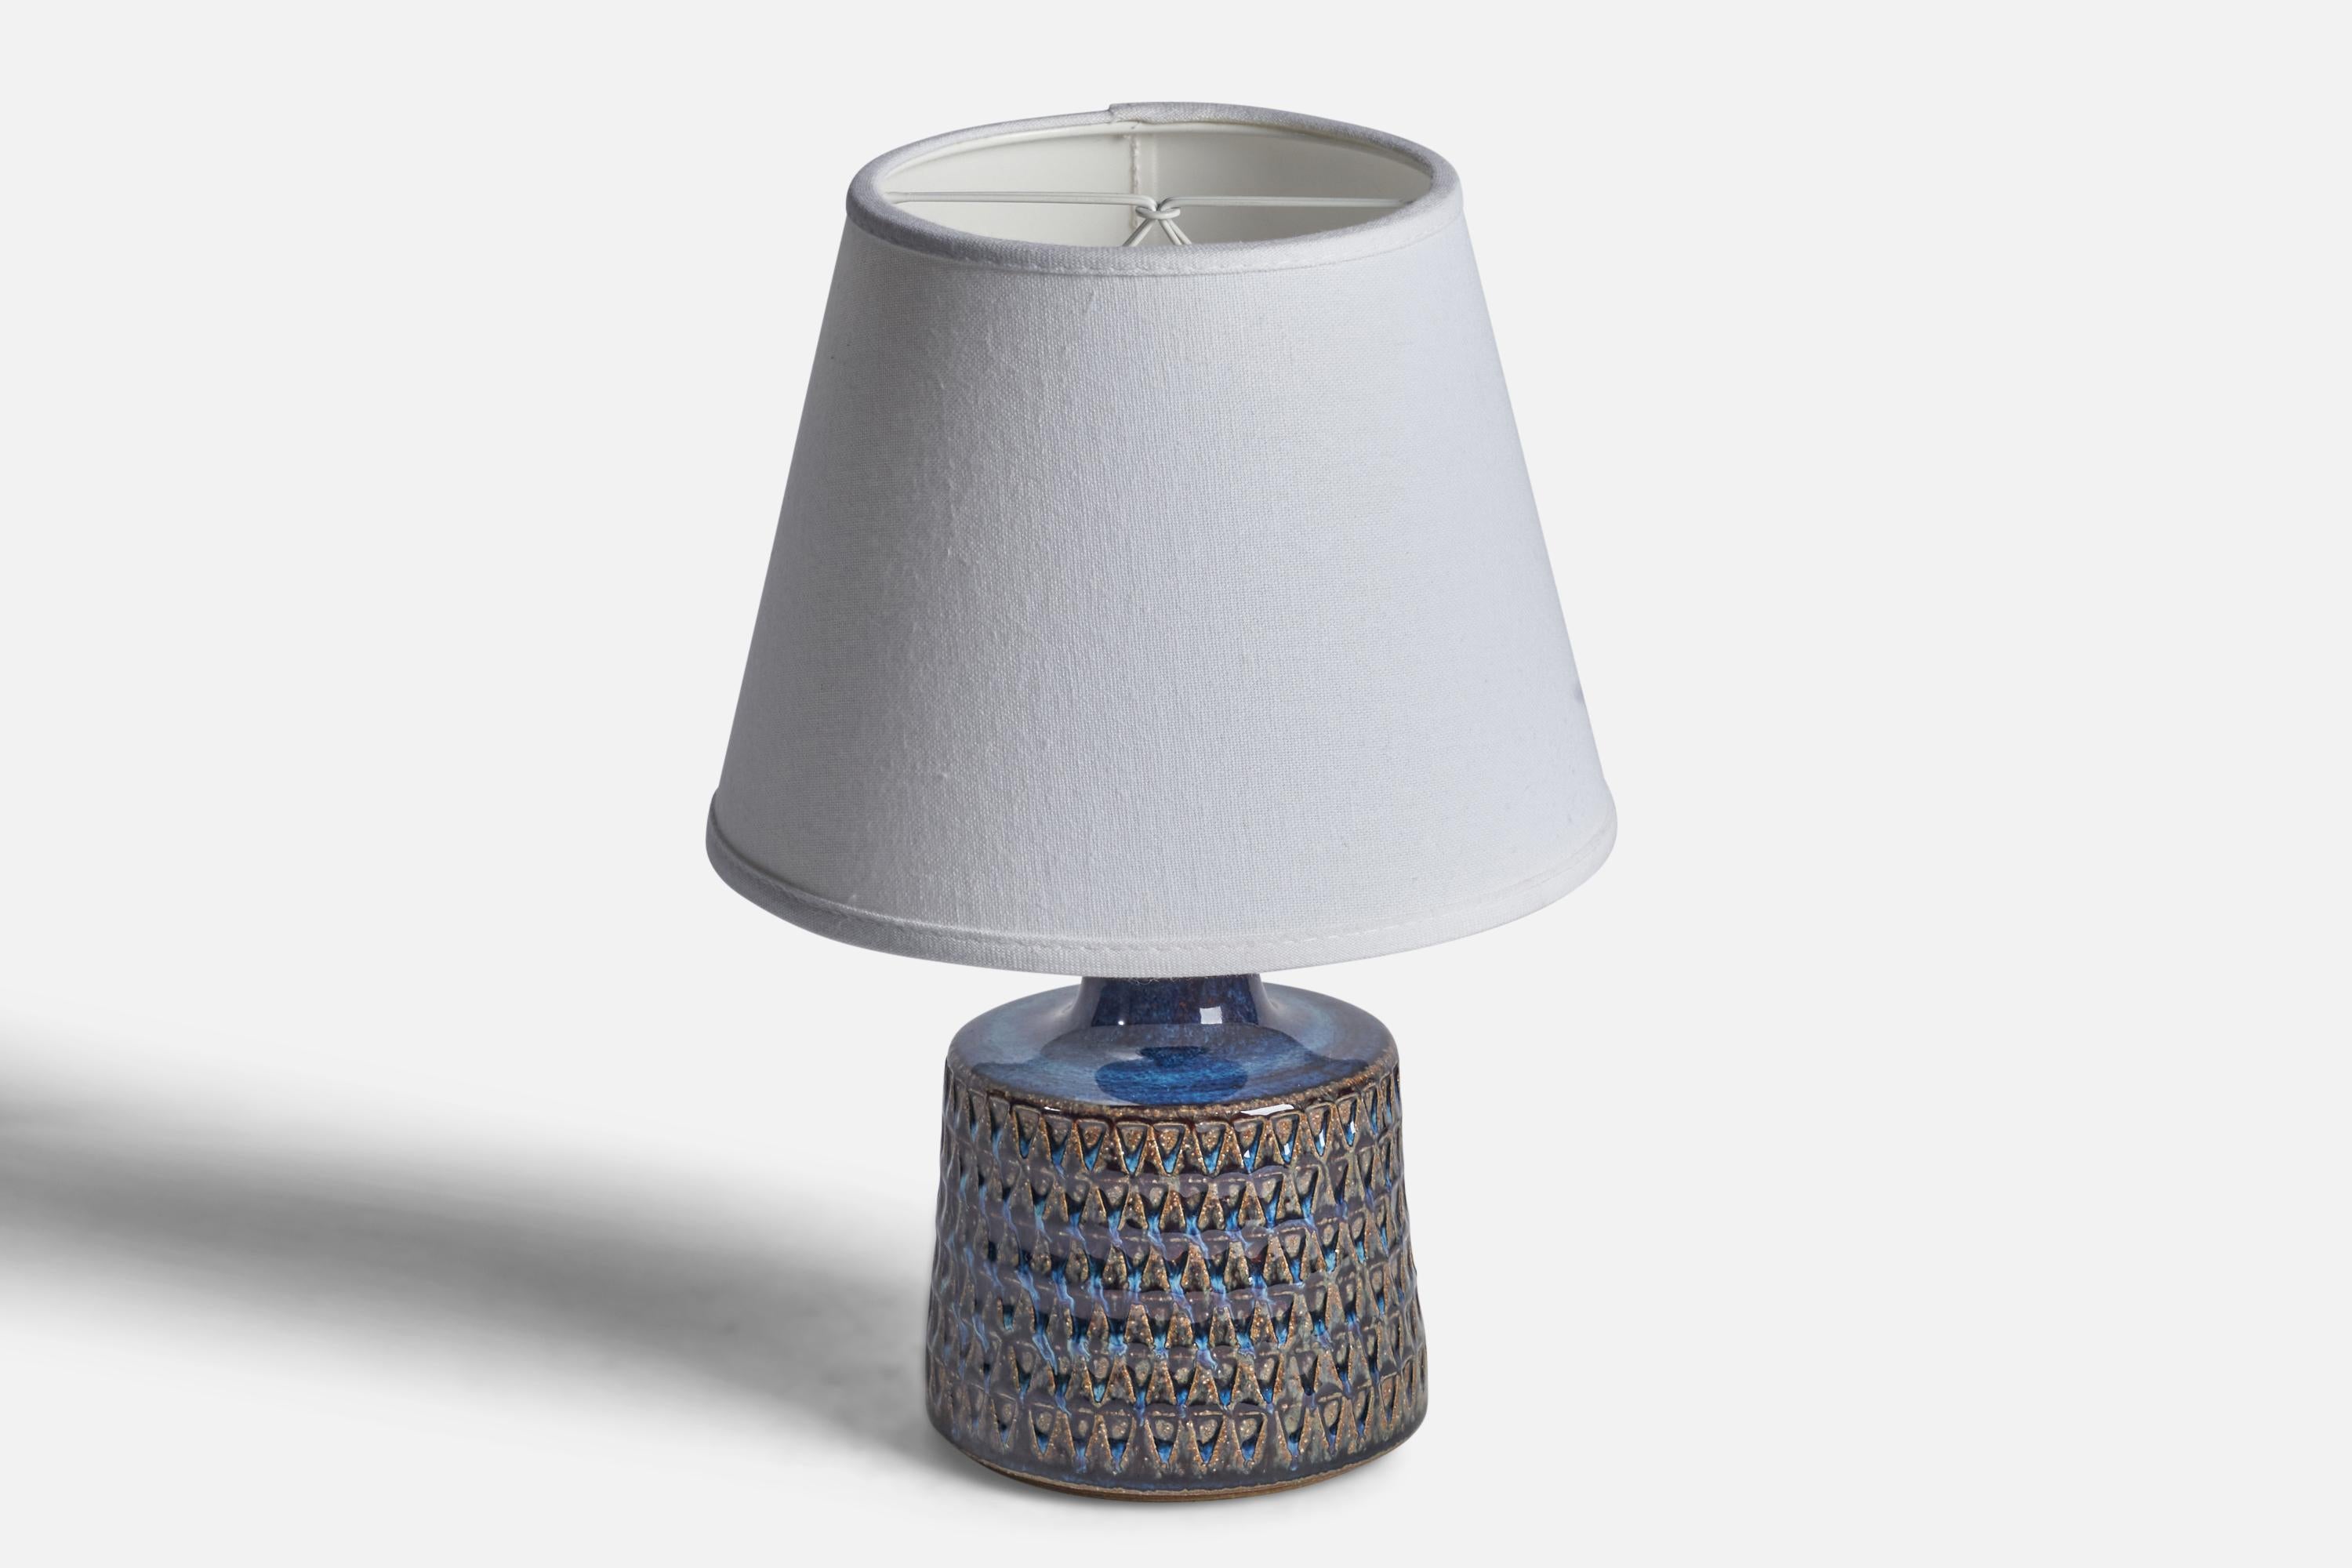 Tischlampe aus blau und braun glasiertem Steingut, entworfen und hergestellt von Søholm, Dänemark, 1960er Jahre.

Abmessungen der Lampe (Zoll): 9